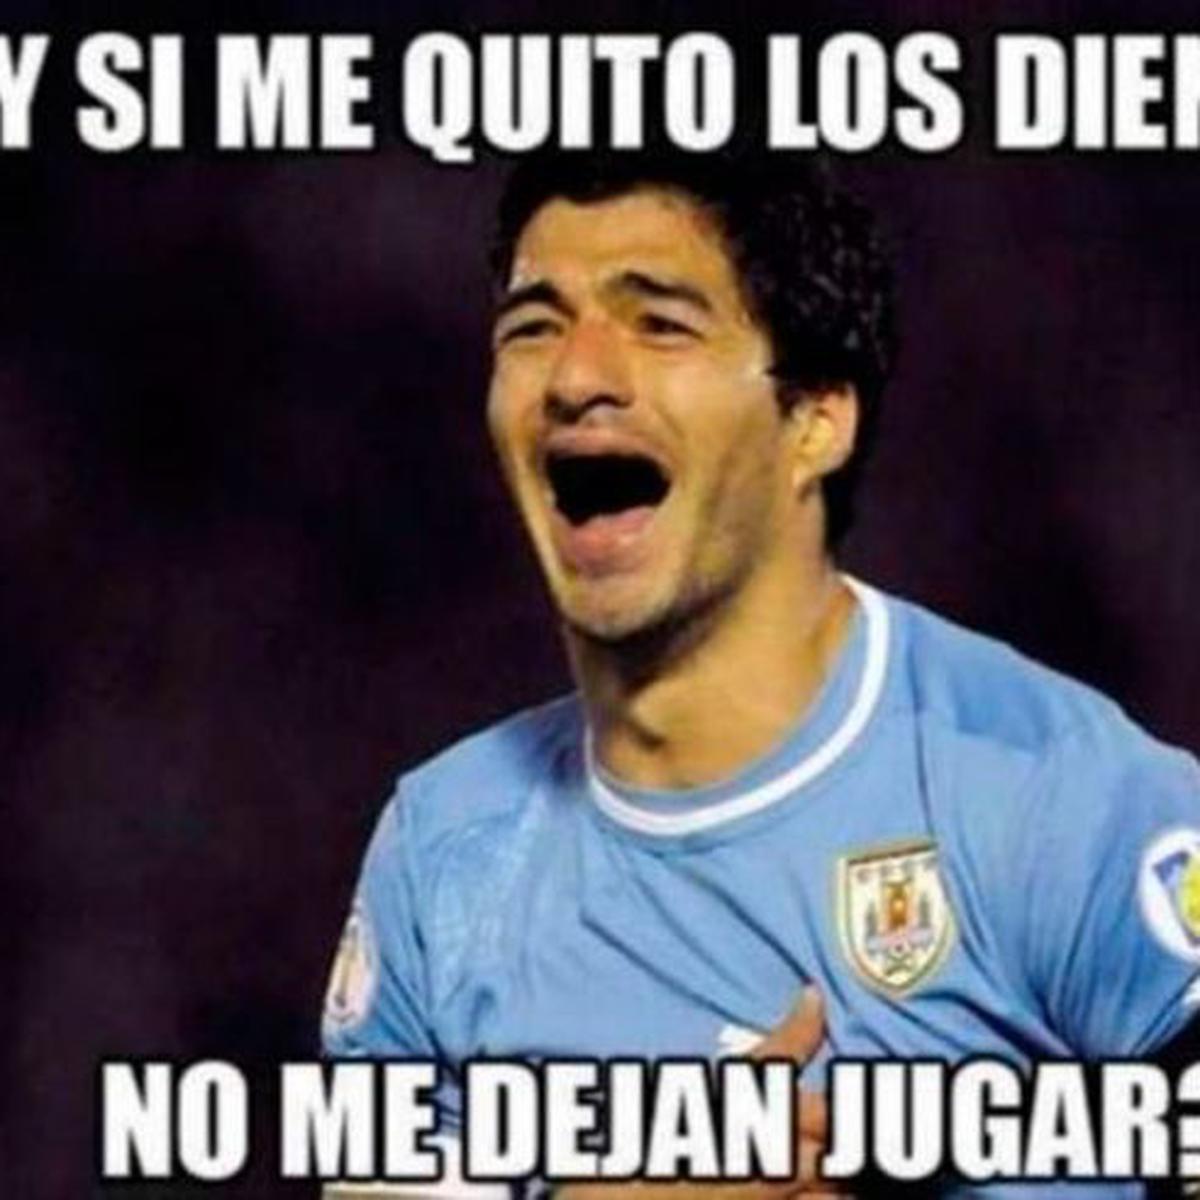 Memes Del Futbol Uruguayo - Hoy perdió el fútbol uruguayo